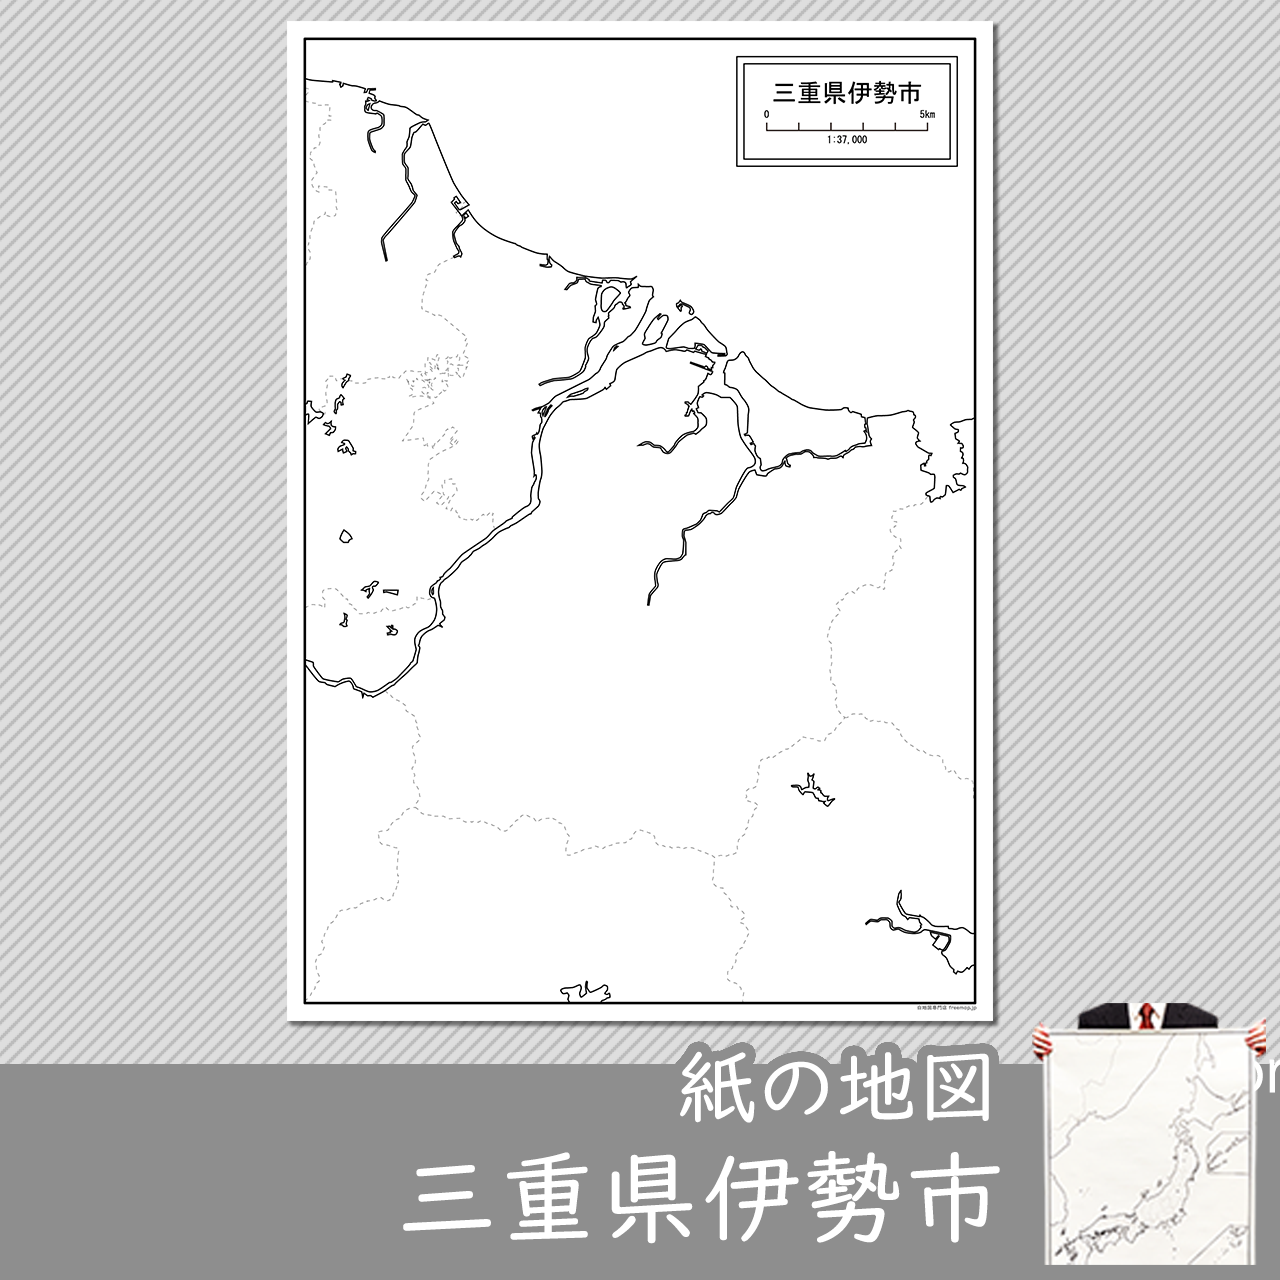 伊勢市の紙の白地図のサムネイル